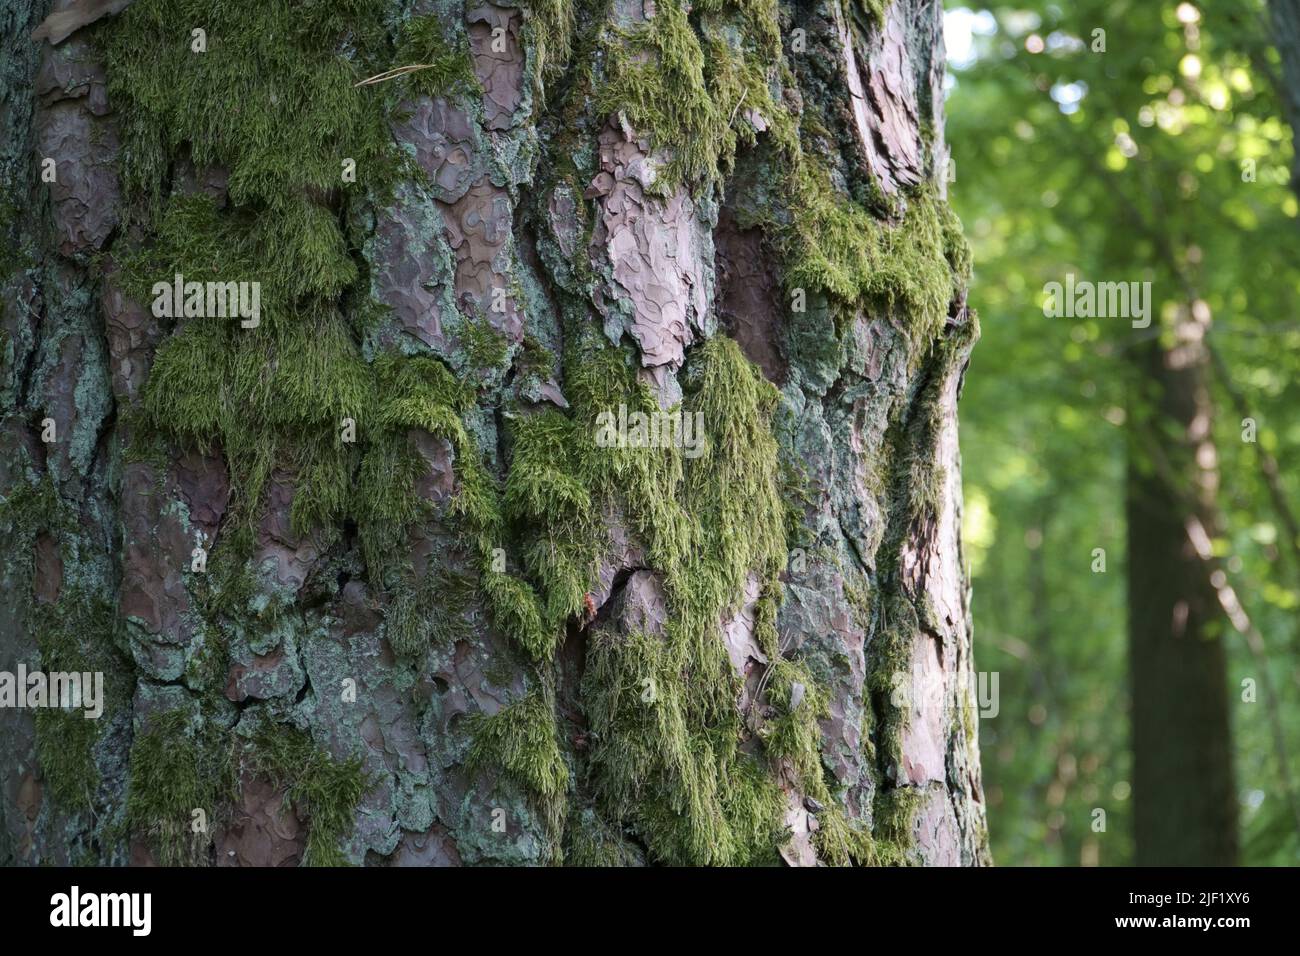 Muschio su una corteccia del pino. La struttura della corteccia del tronco di pino vecchio e Mosy in una scena ravvicinata in una foresta estiva. Bel campione degli elementi naturali des Foto Stock